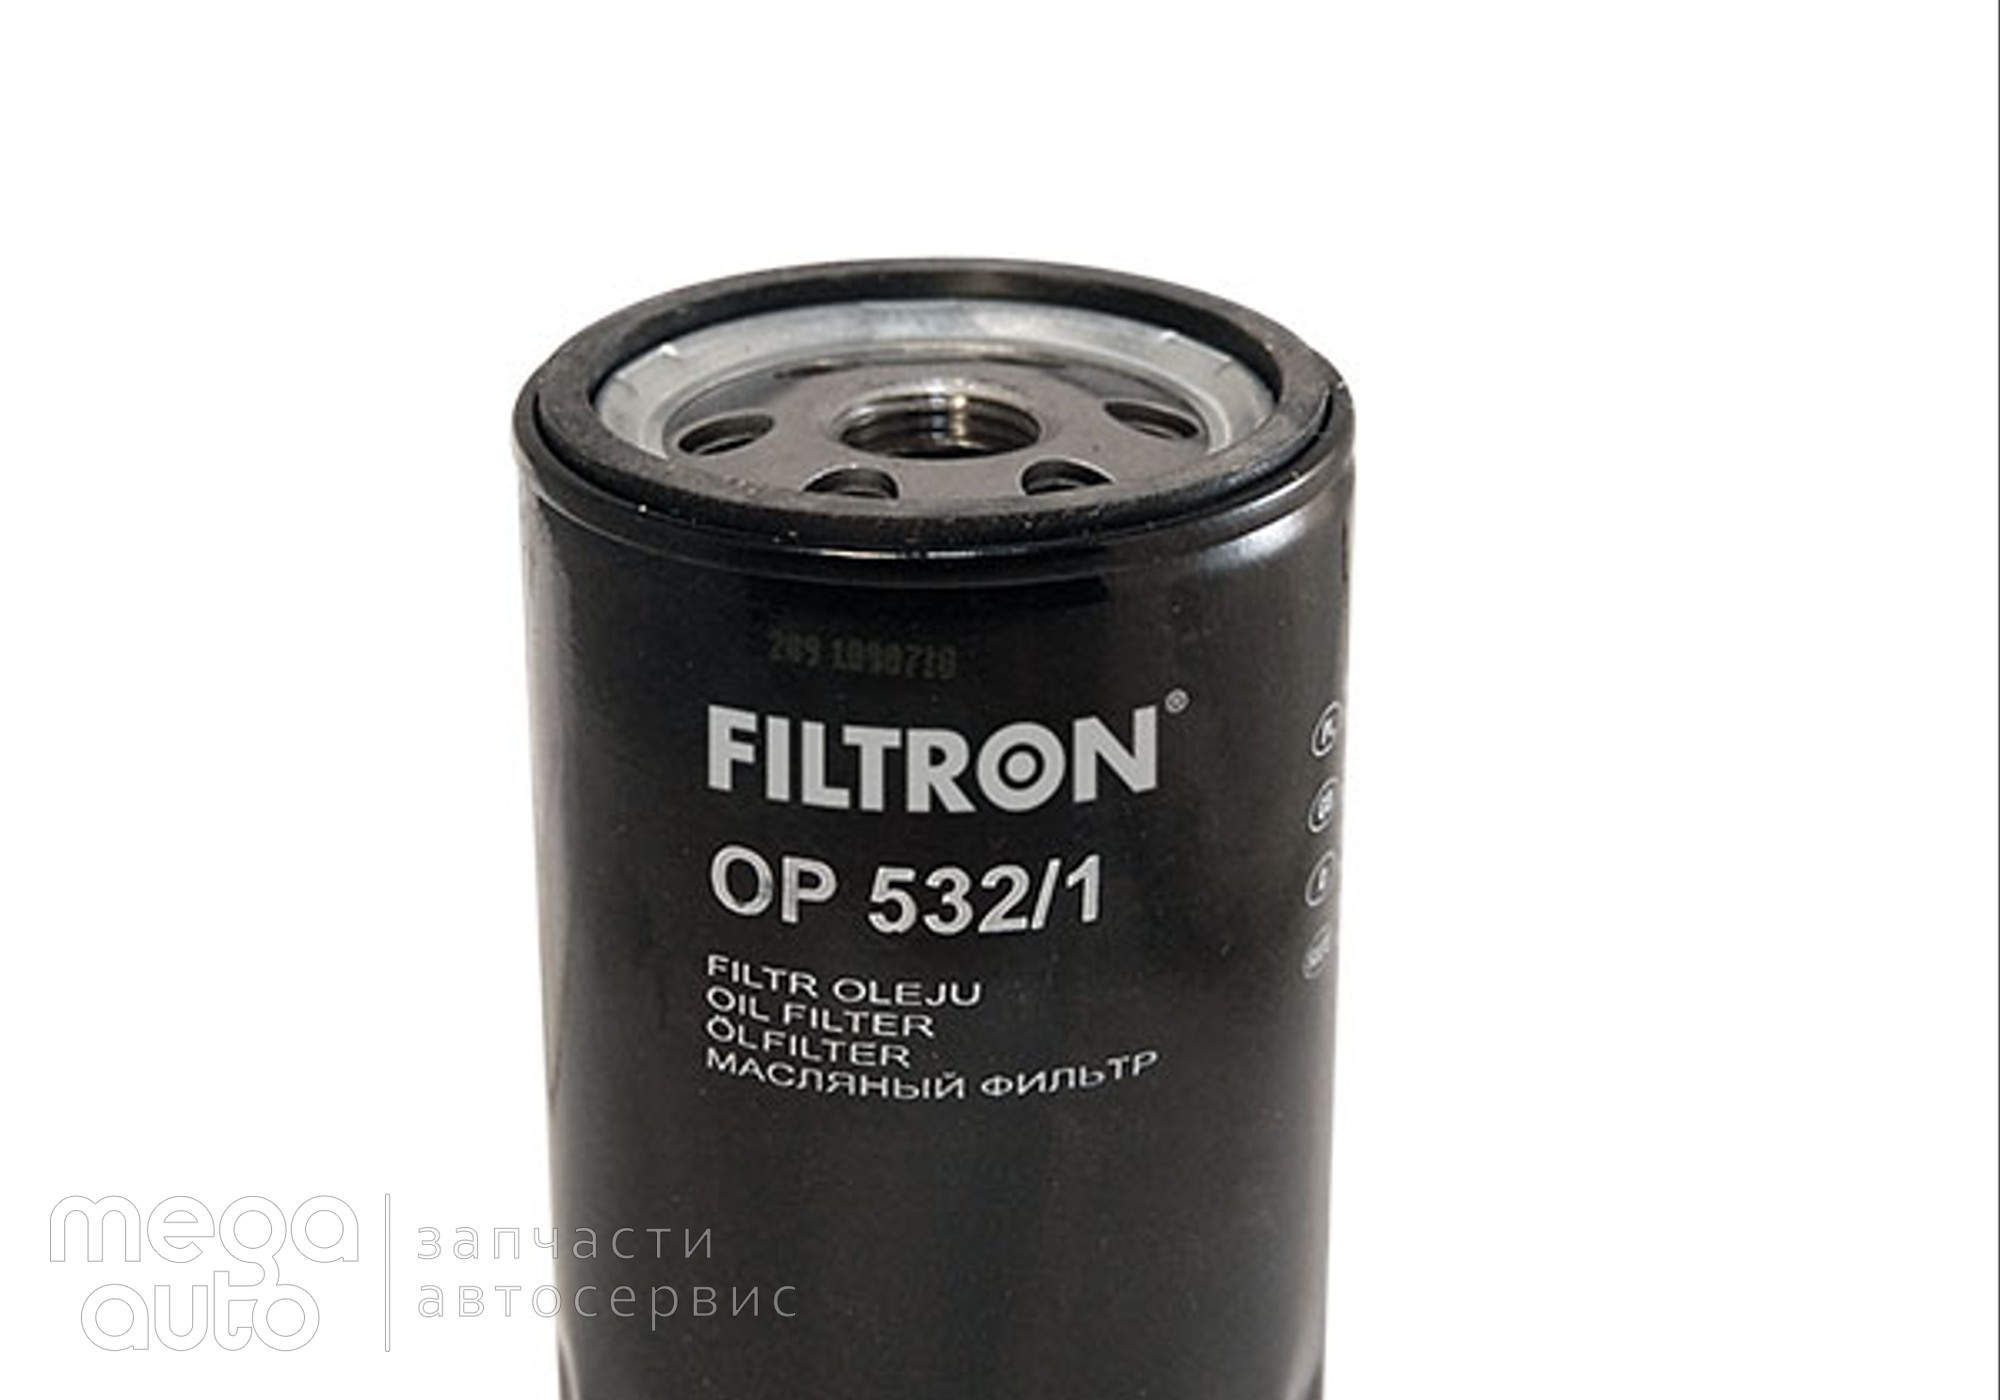 96565412 Масляный фильтр форд мондео, эскорт(Filtron) для Nissan Pulsar